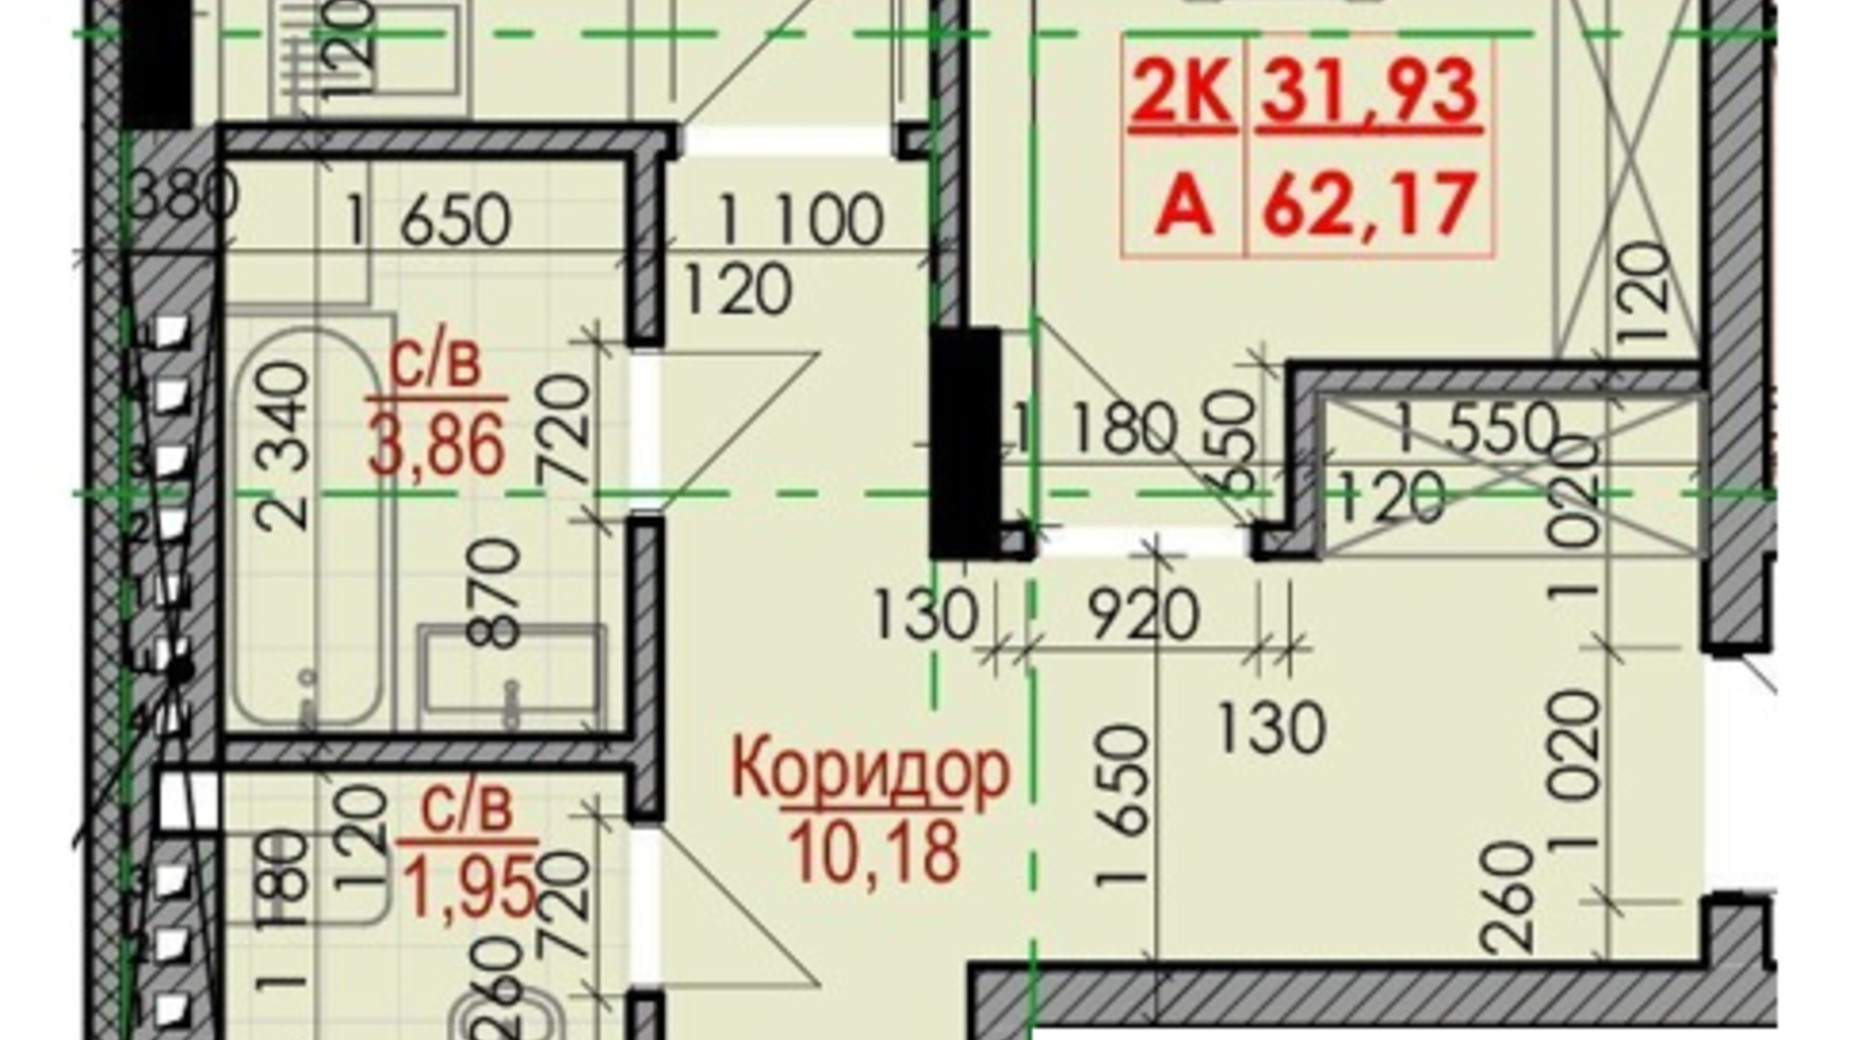 Планування 2-кімнатної квартири в ЖК Цитадель-1 62.17 м², фото 506126